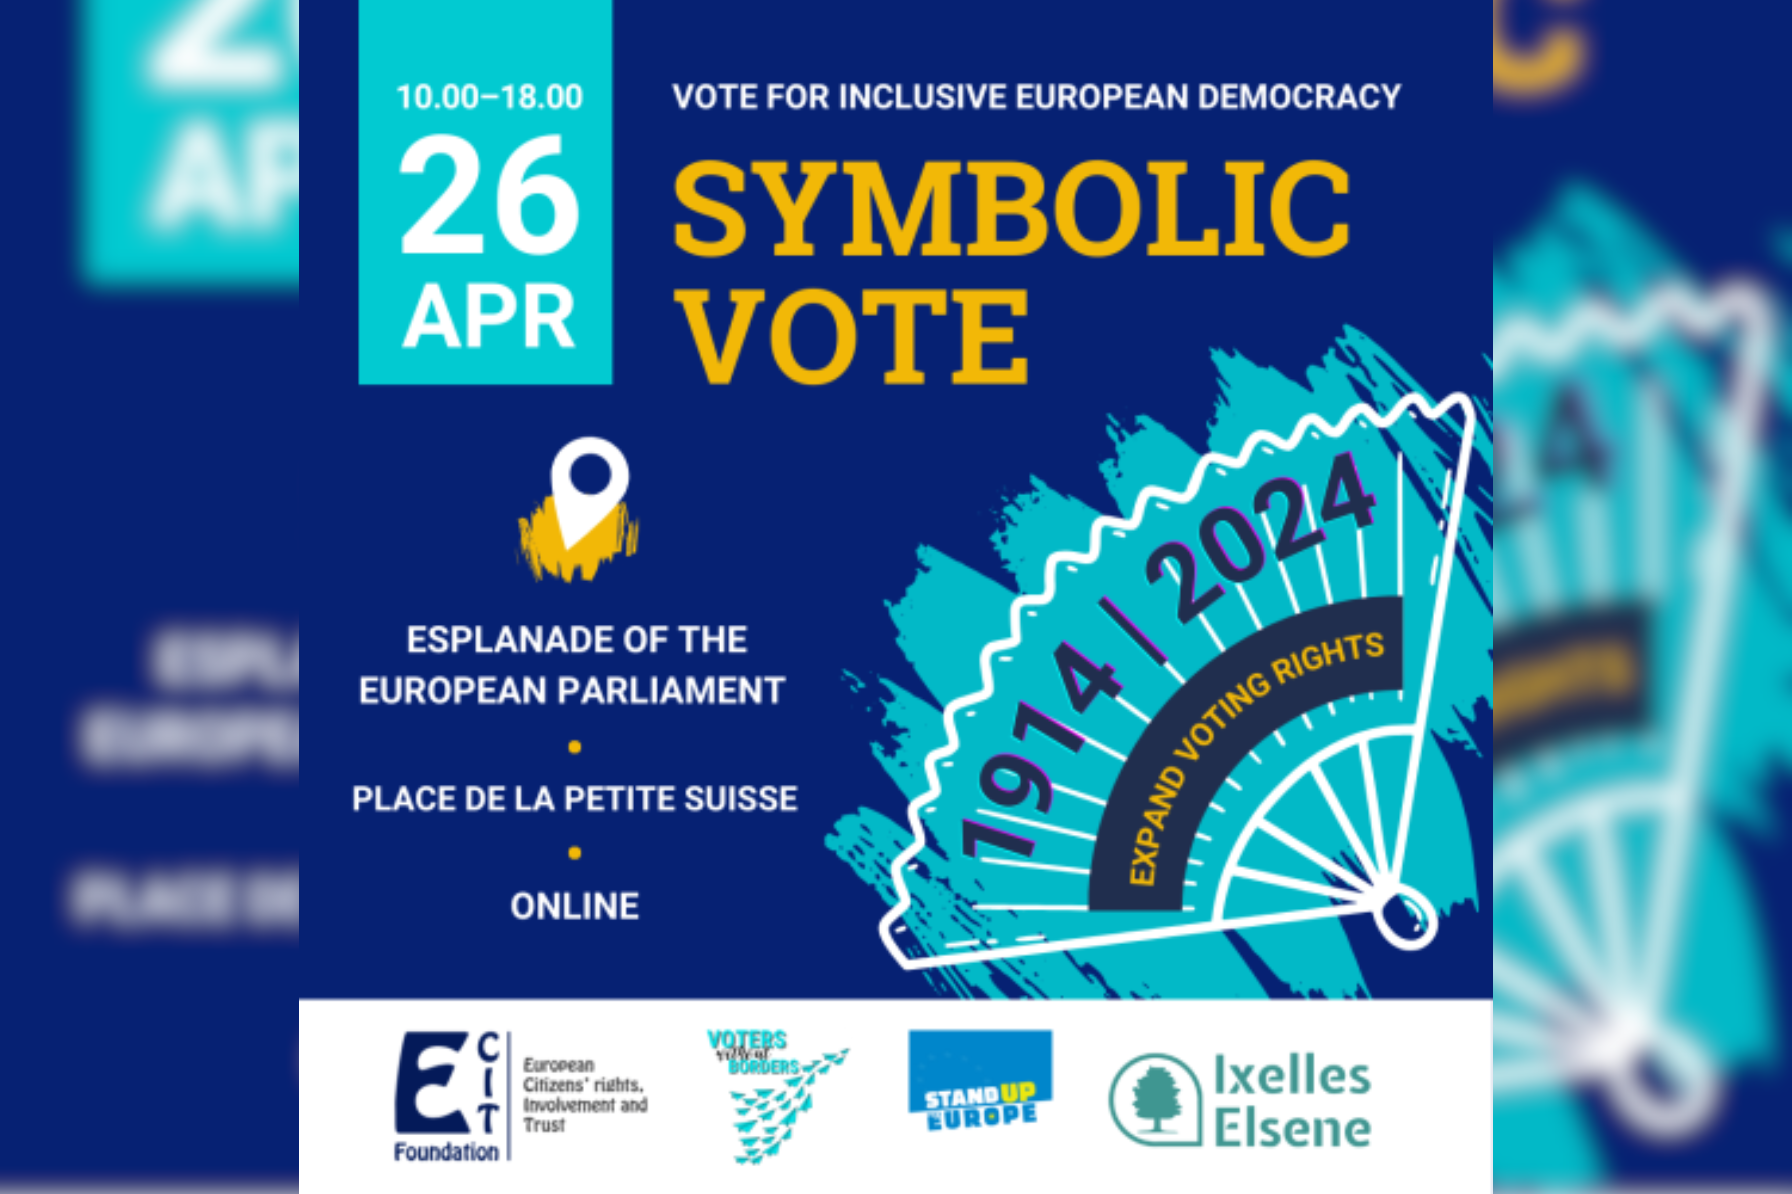 Symbolic Vote at the European Parliament